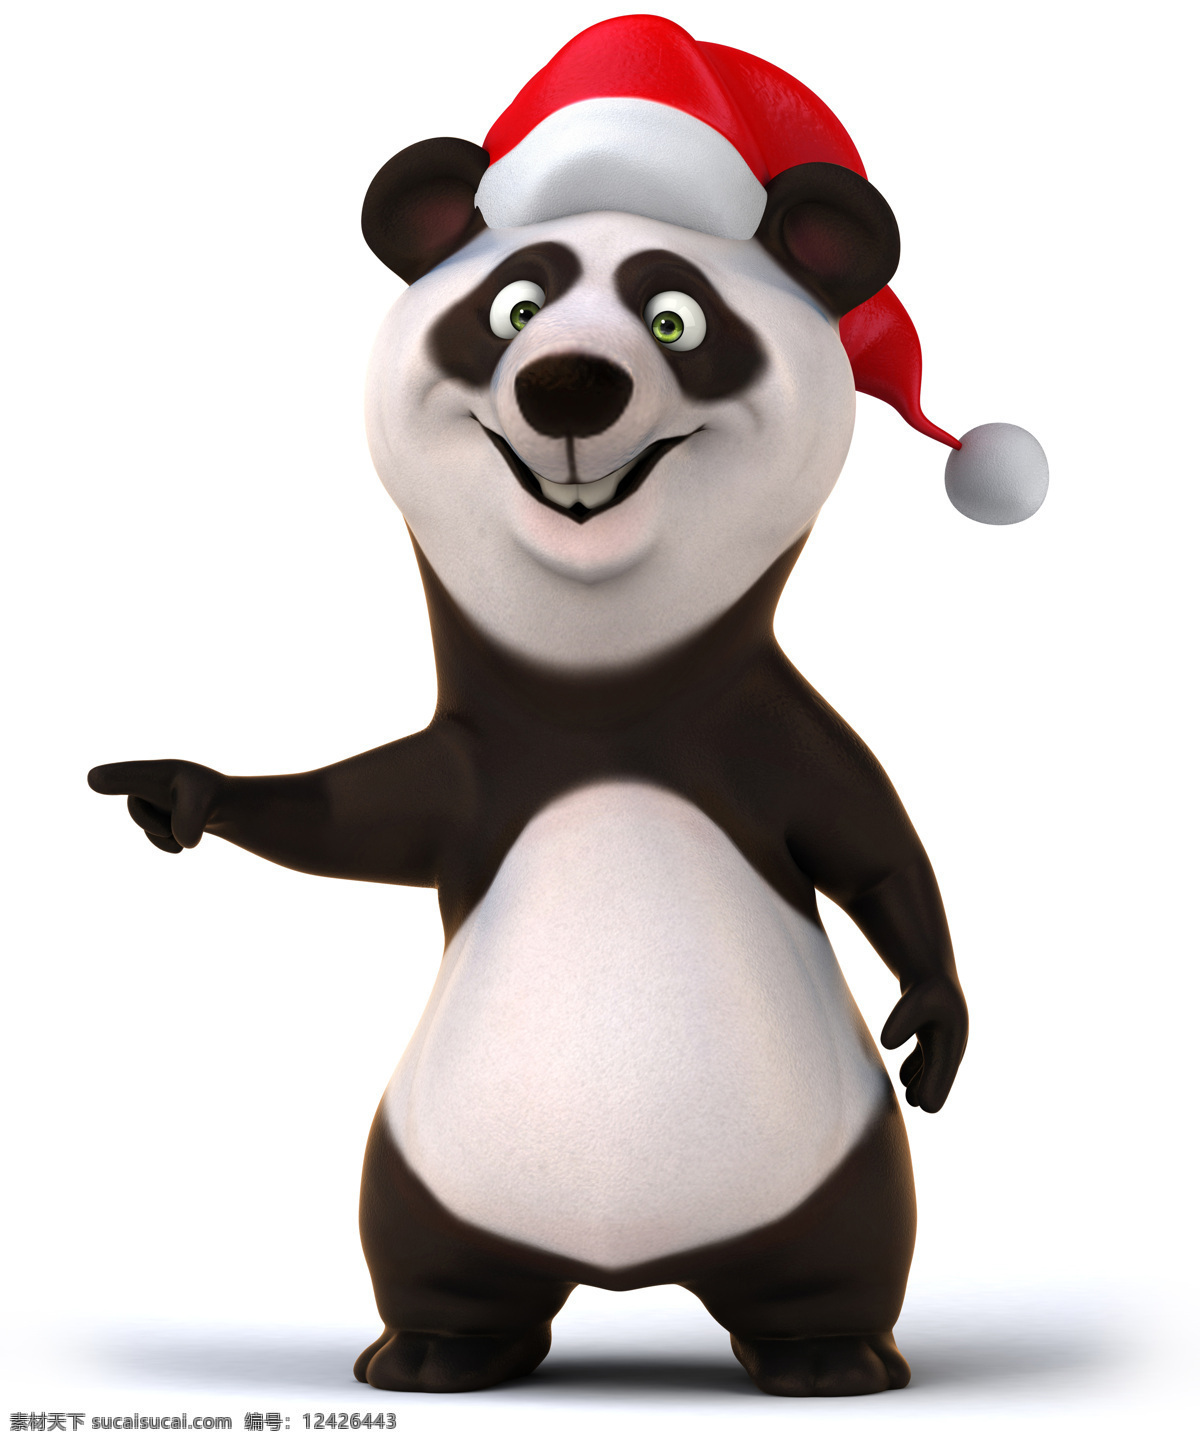 带 圣诞 帽子 的卡 通 熊猫 卡通熊猫 圣诞帽 动物 宠物 圣诞节 圣诞素材 节日素材 陆地动物 生物世界 猫咪图片